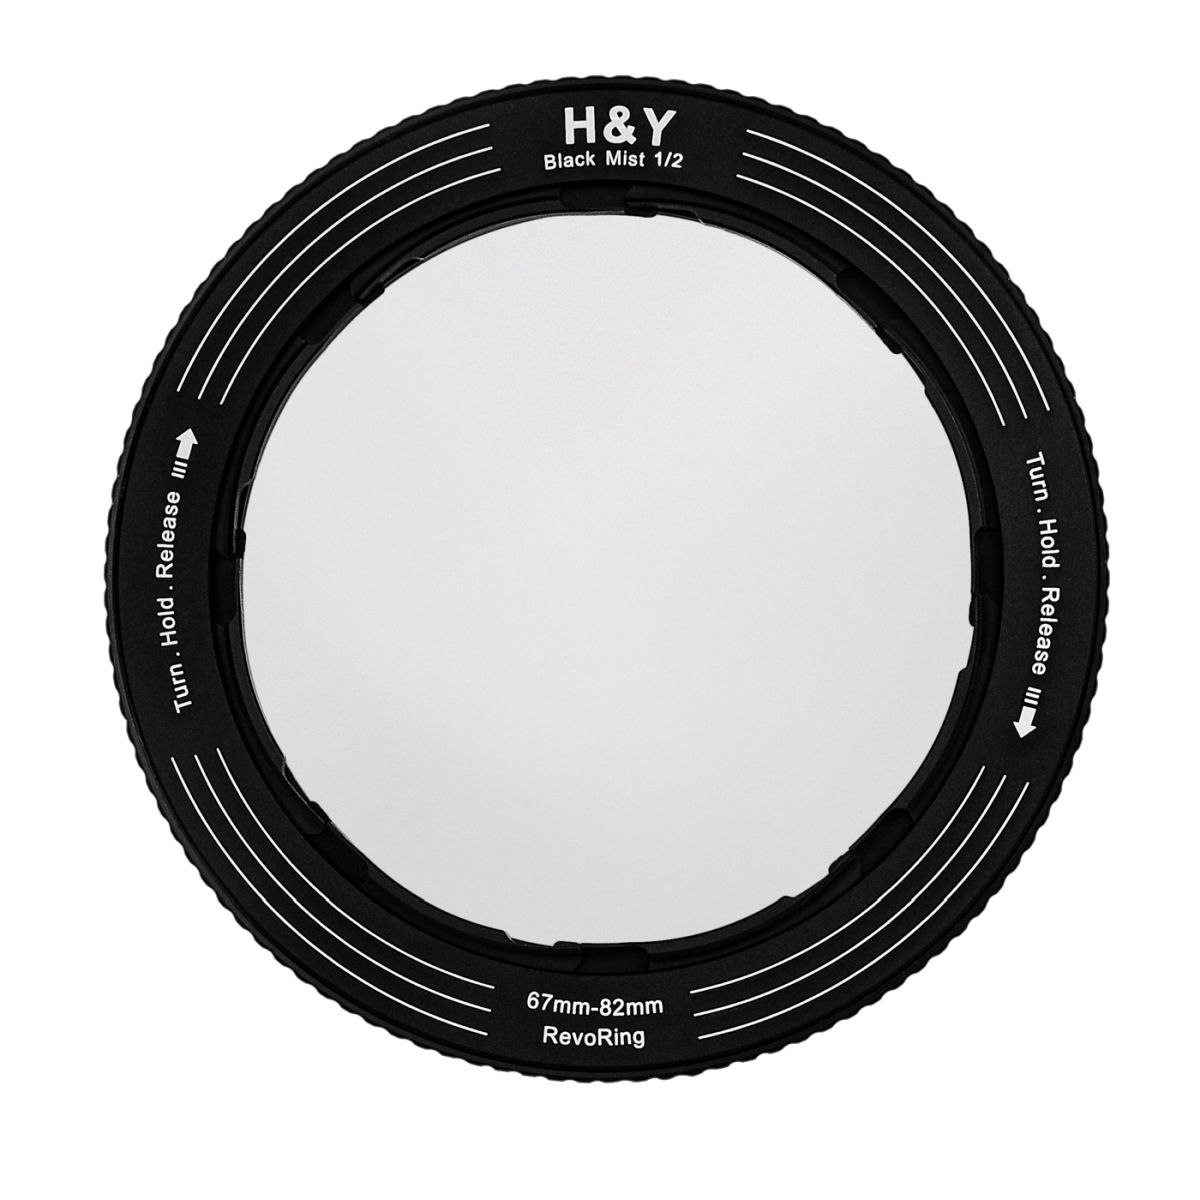 H&Y REVORING 67-82mm Black Mist 1/2 Filter